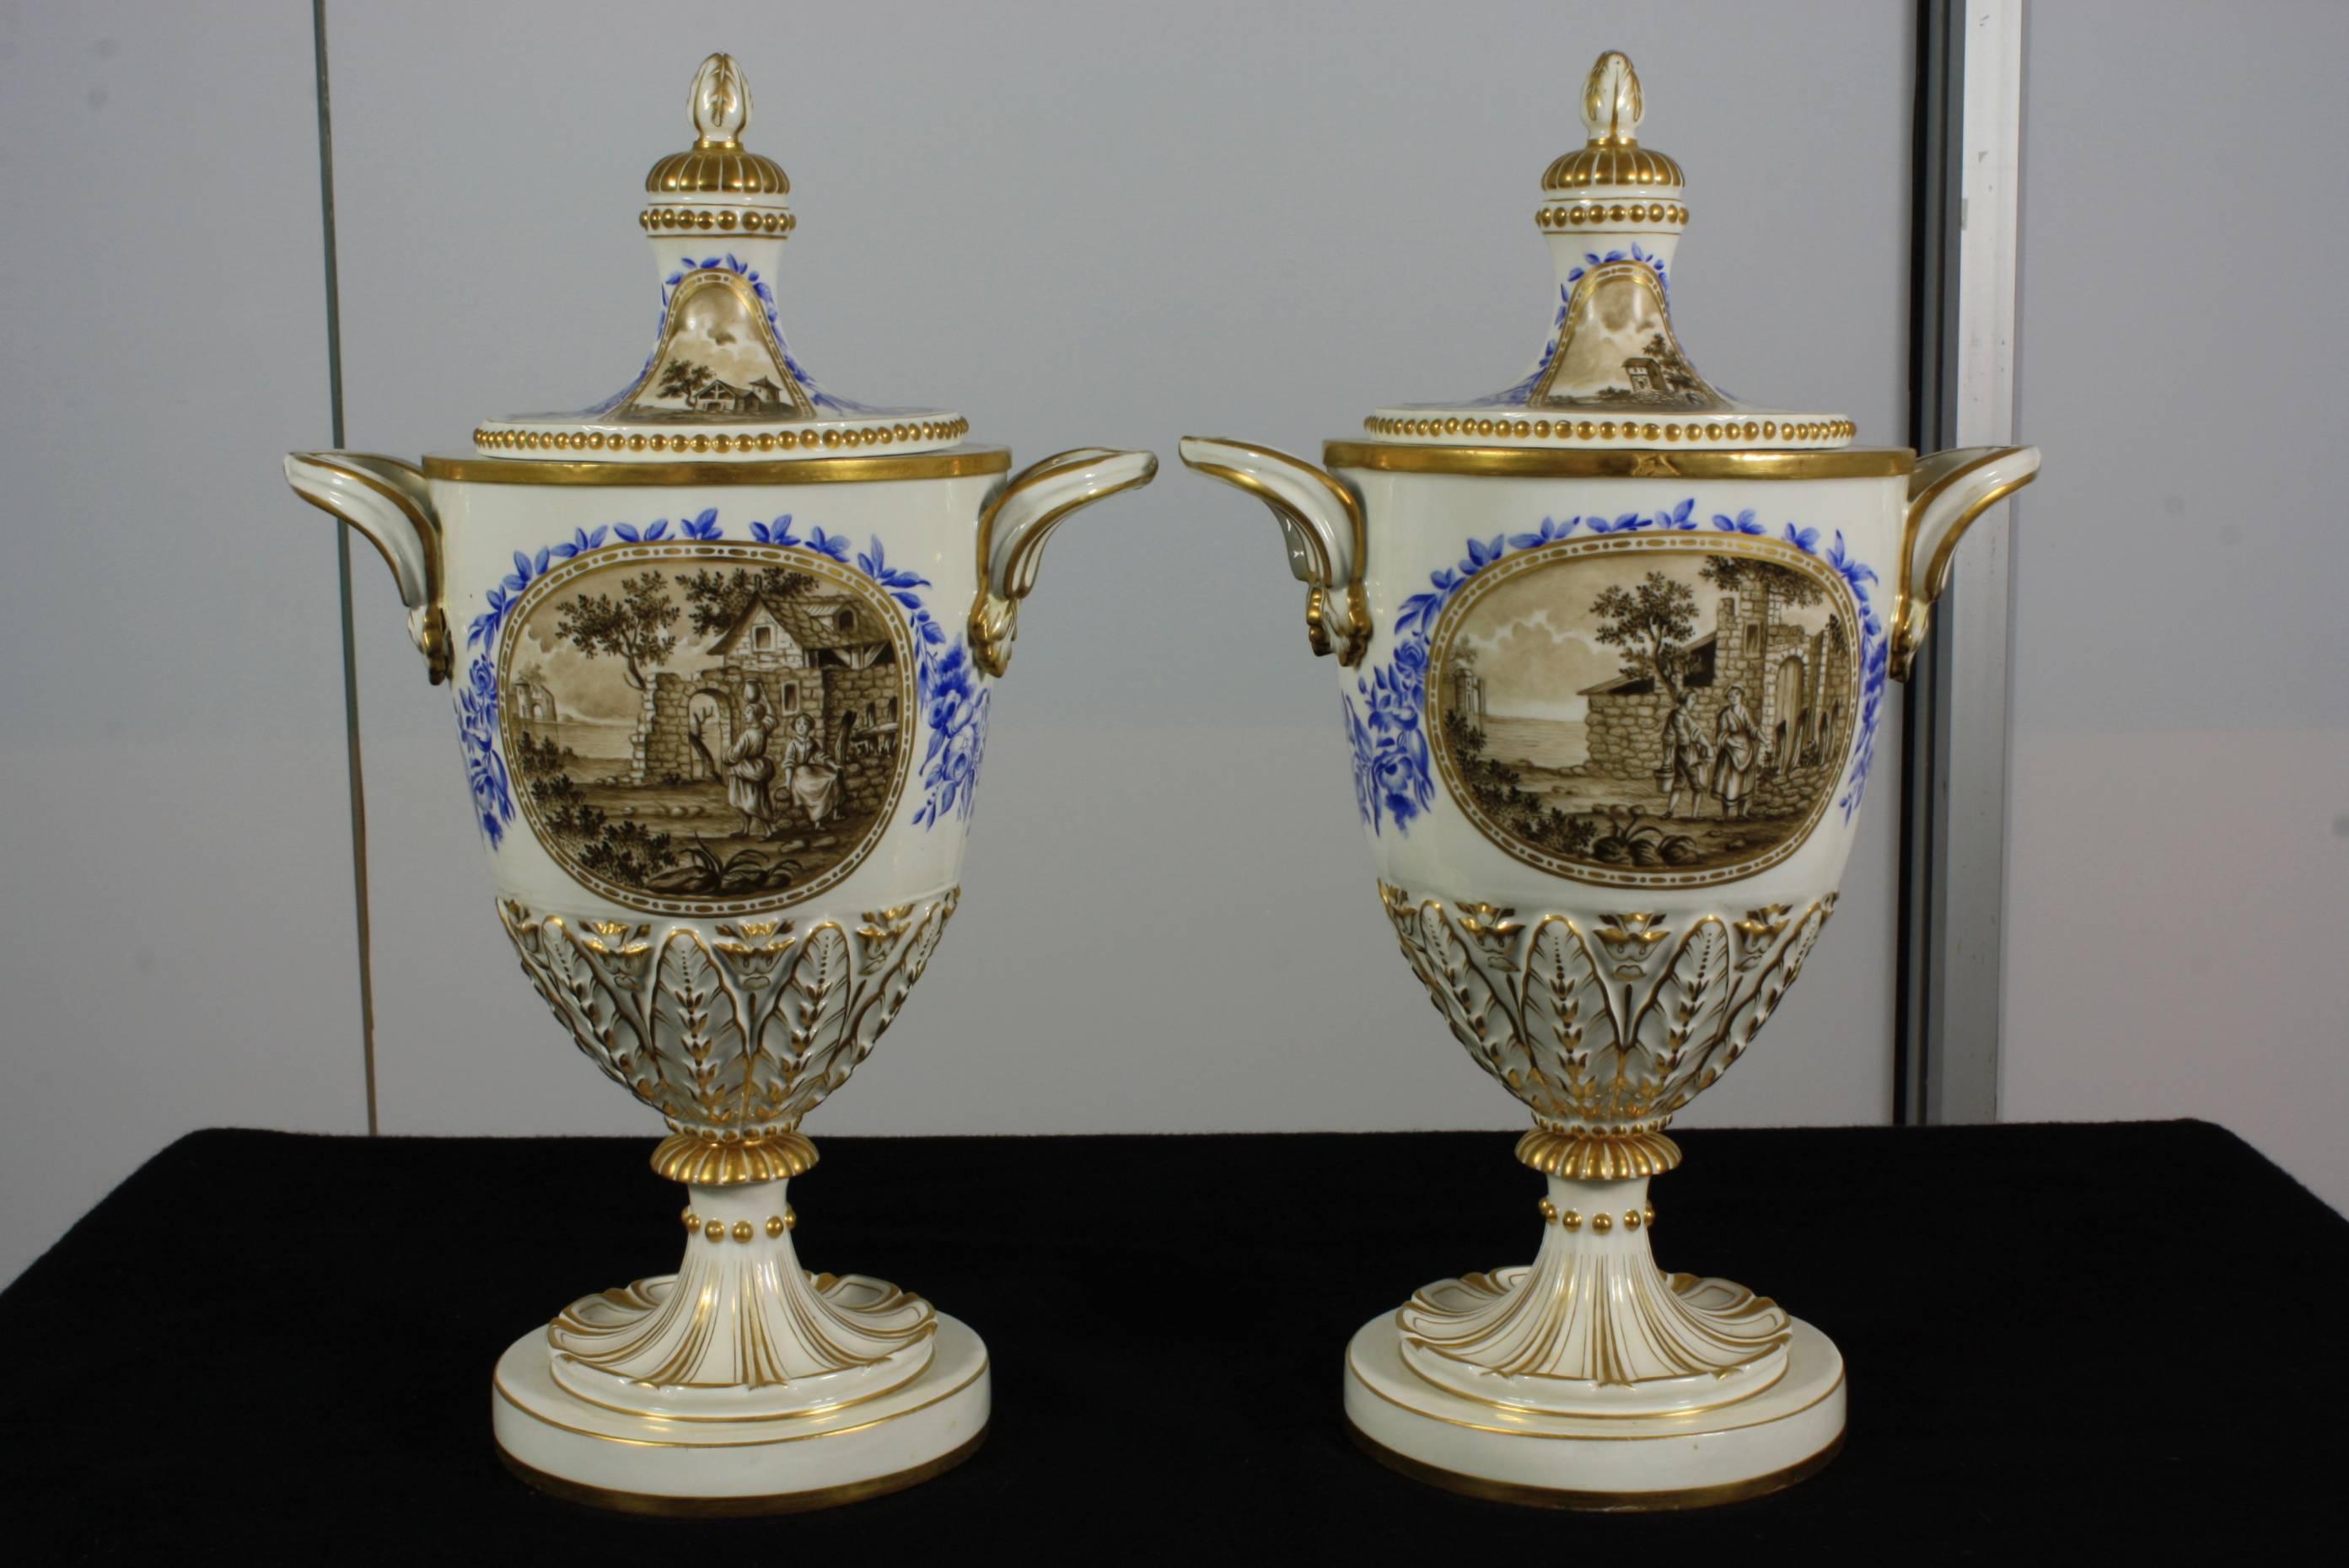 Zwei elegante italienische Porzellan-Deckelurnen aus dem 19. Jahrhundert mit handgemalten Szenen und vergoldeten Details. Eine Seite der Urnen zeigt eine neoklassizistische Szene, die Rückseite eine bukolische Szene. Jede der gemalten Szenen wird